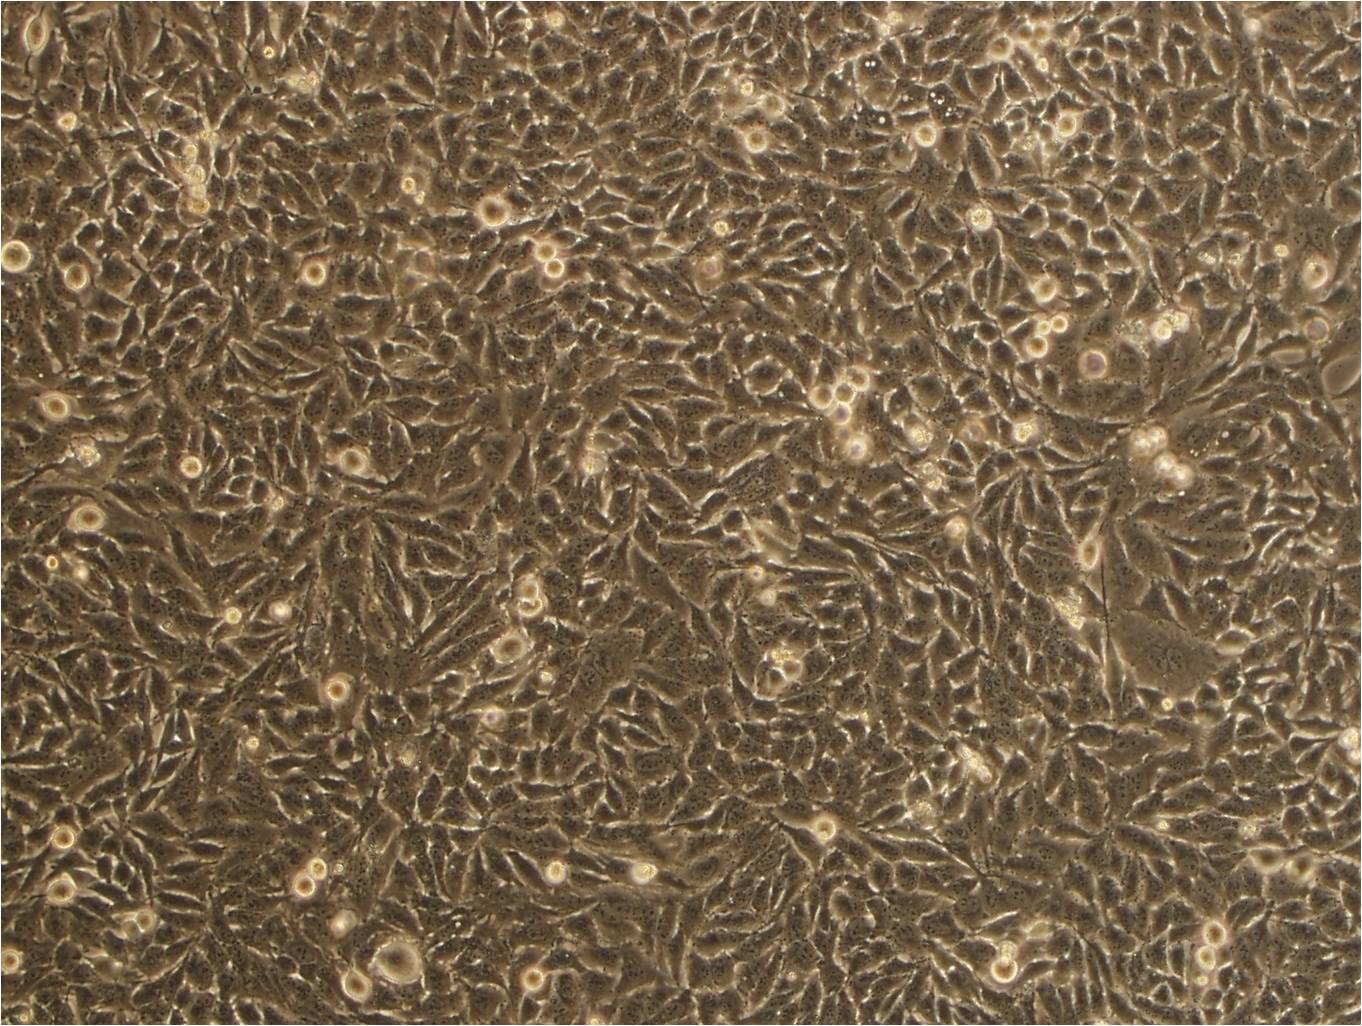 OCM-1A Cell|人脉络膜黑色素瘤细胞